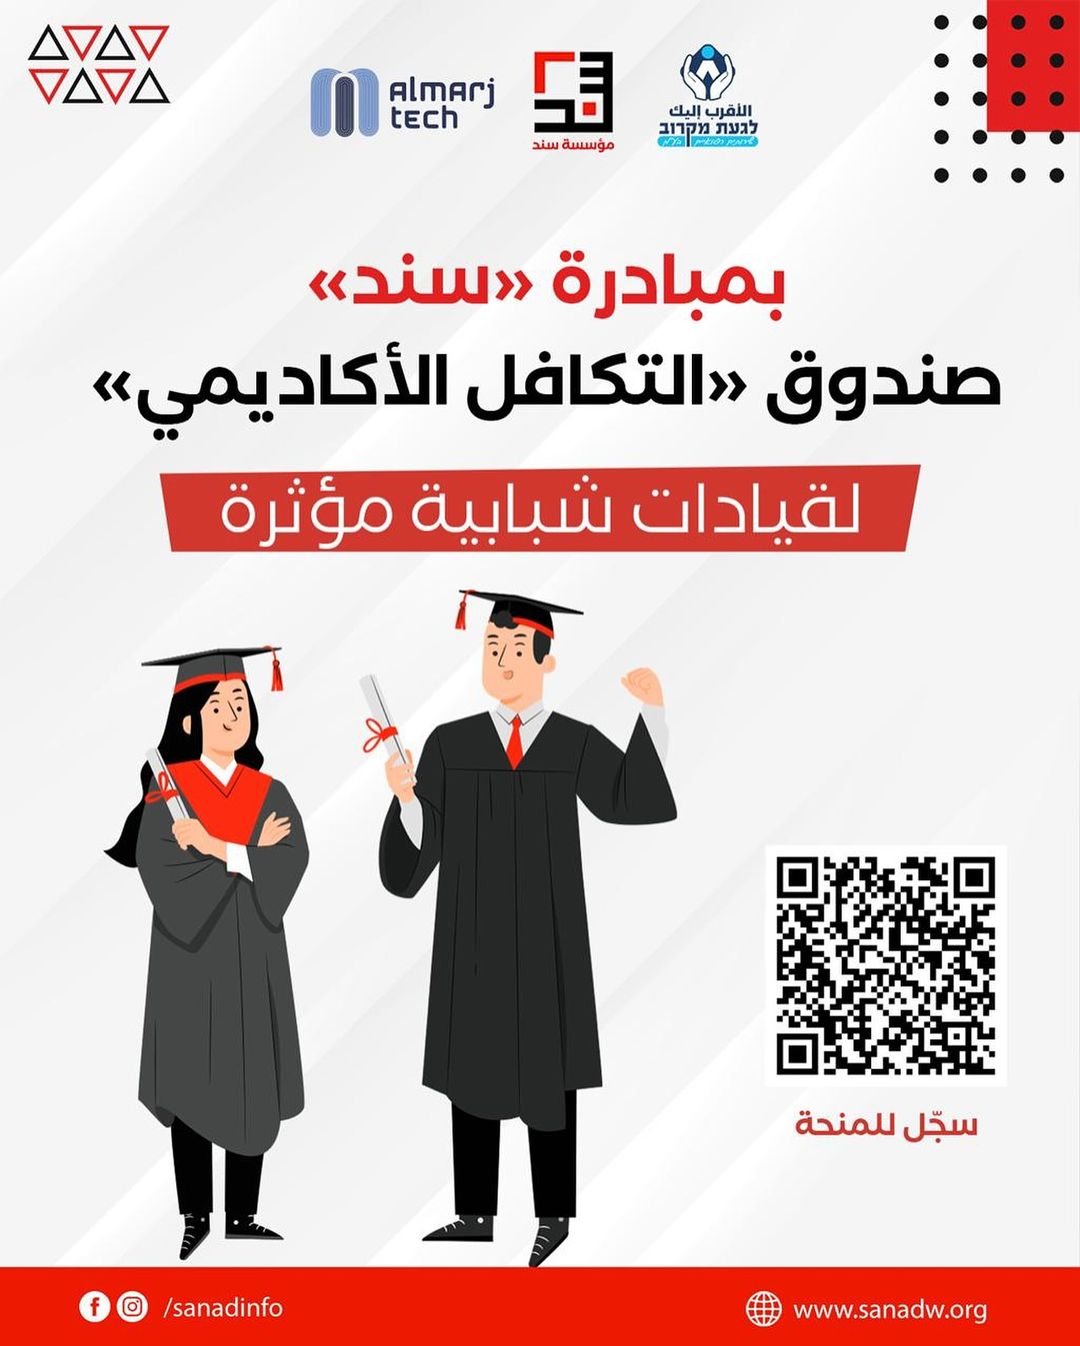 קרן סנאד לפיתוח בר קיימא בחברה הערבית מודיעה על הקמת קרן "אלתכאפל אלאקאדימי" לסטודנטים ערבים באוניברסיטאות ובמכללות.